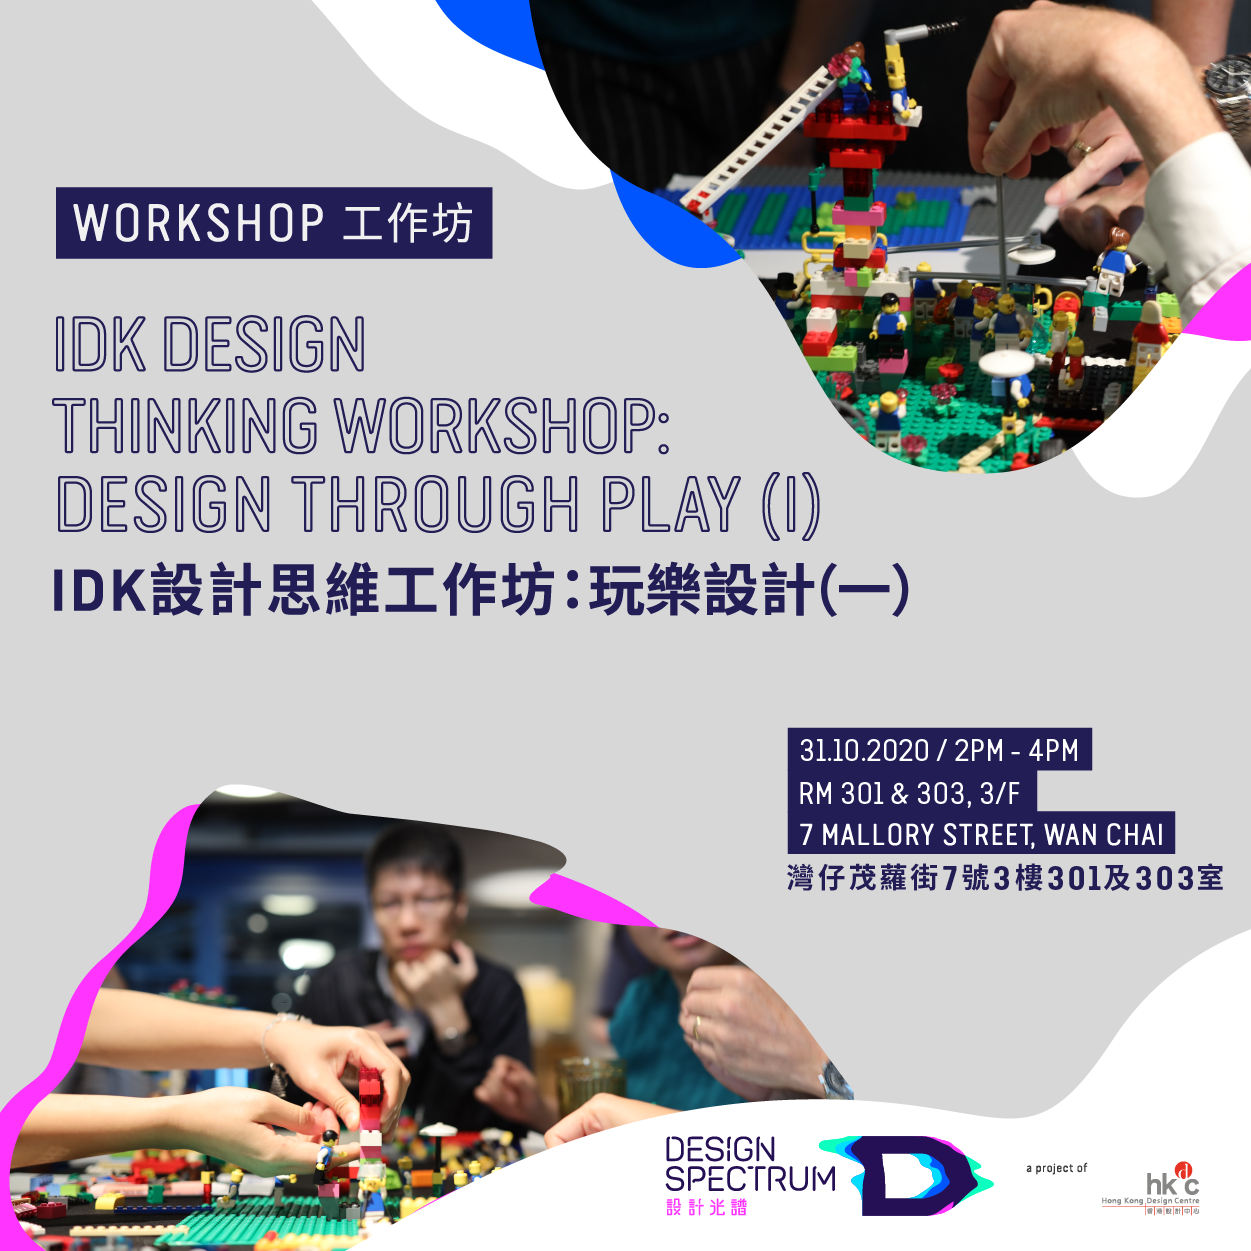 Design Spectrumidk-design-thinking-workshops-designing-through-play-1